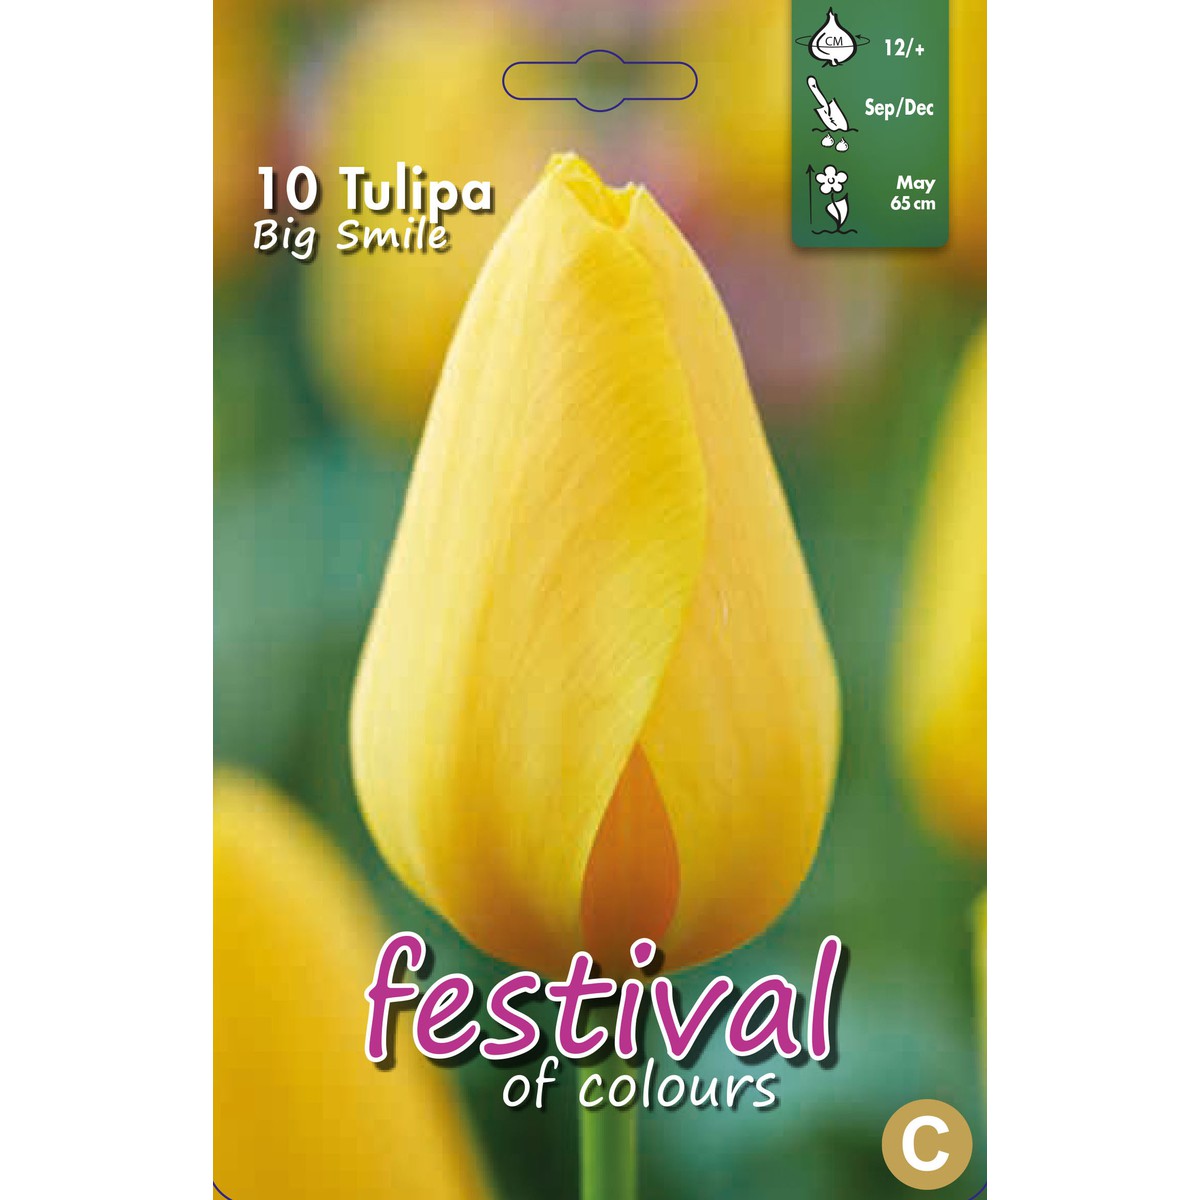   Tulipes 'Big Smile'  10 pcs 12/+